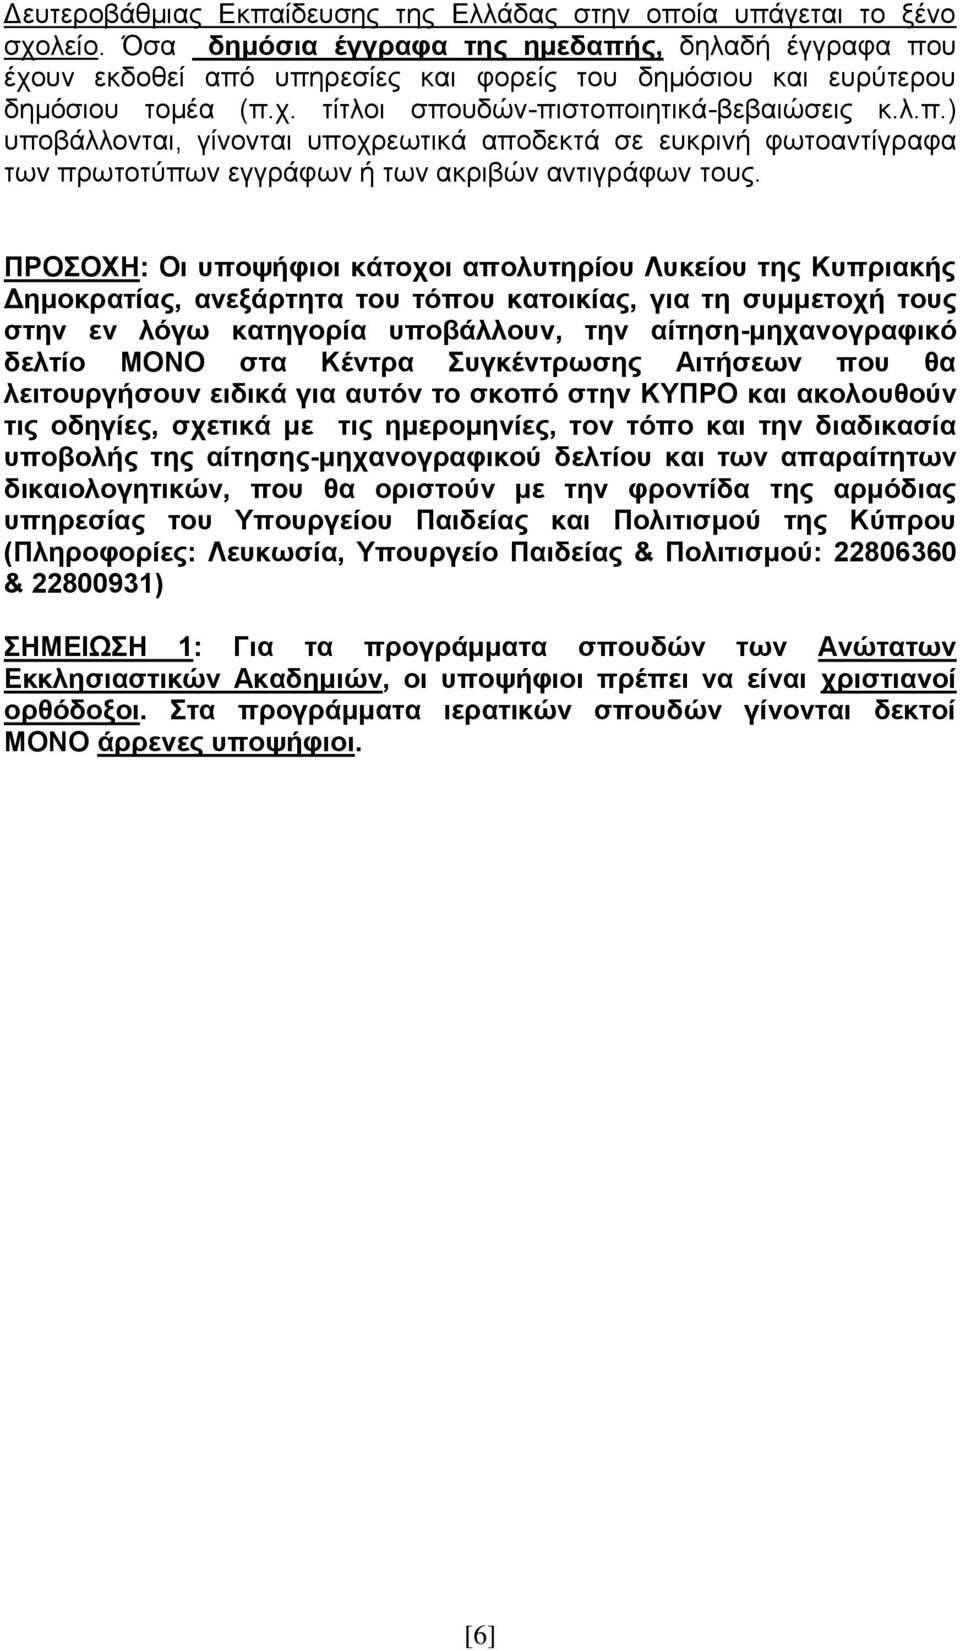 ΠΡΟΣΟΧΗ: Οι υποψήφιοι κάτοχοι απολυτηρίου Λυκείου της Κυπριακής Δημοκρατίας, ανεξάρτητα του τόπου κατοικίας, για τη συμμετοχή τους στην εν λόγω κατηγορία υποβάλλουν, την αίτηση-μηχανογραφικό δελτίο